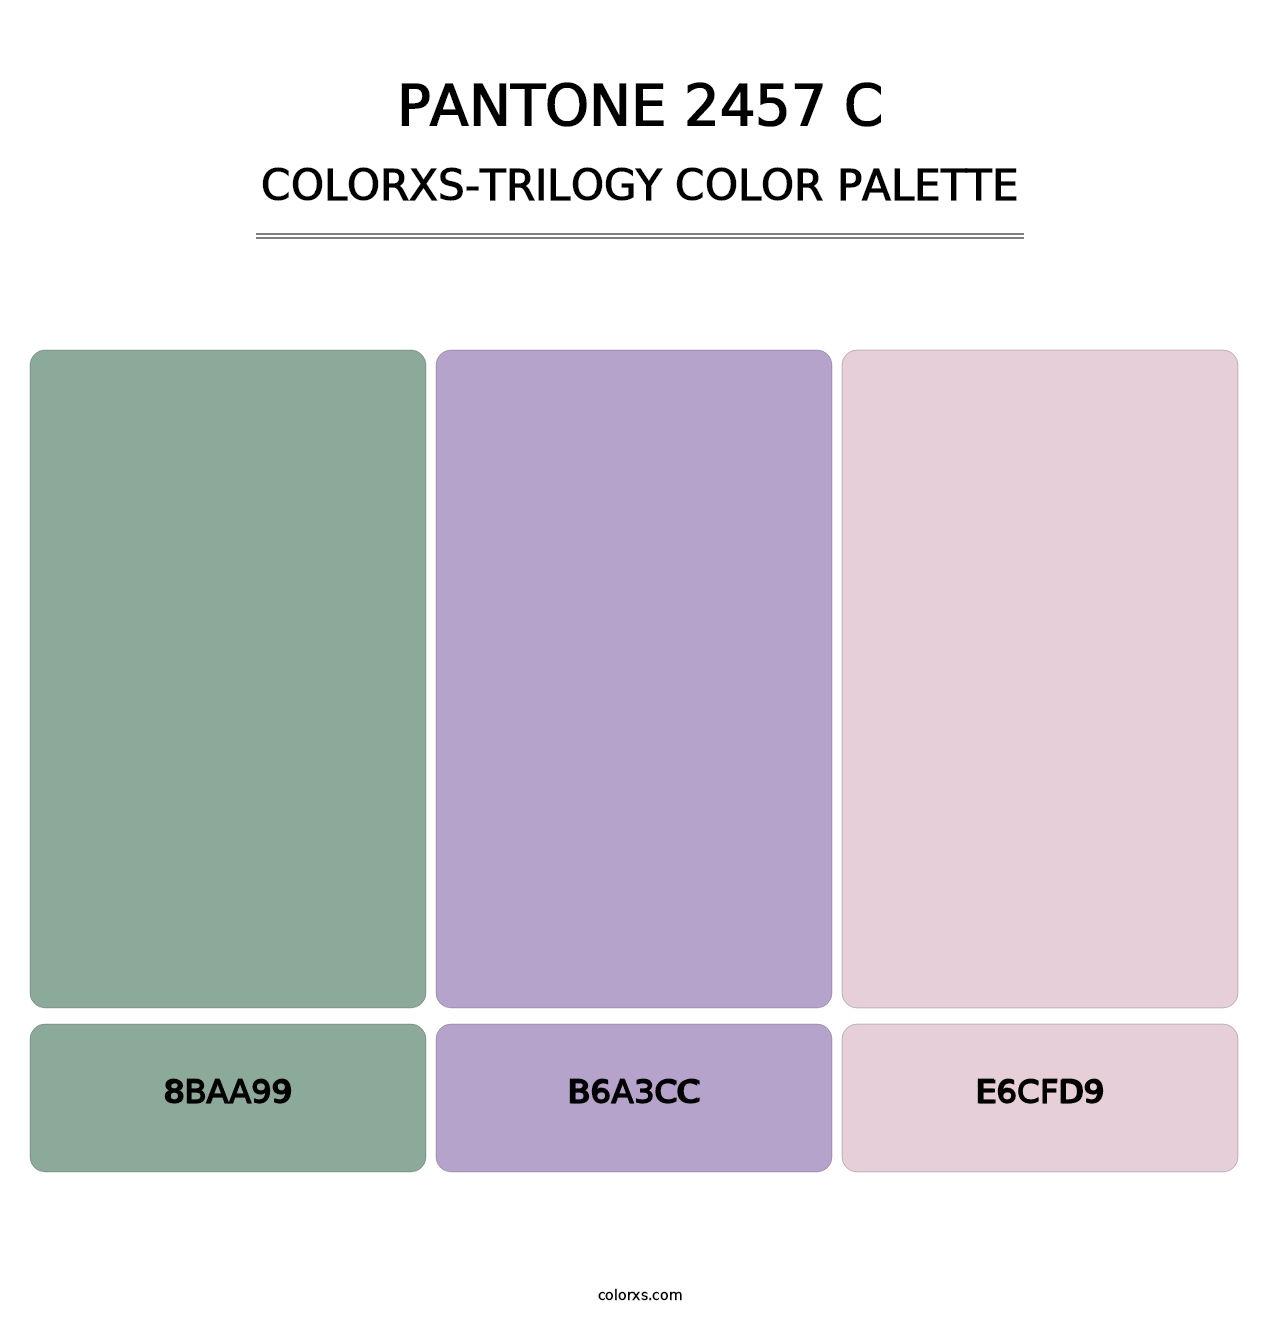 PANTONE 2457 C - Colorxs Trilogy Palette